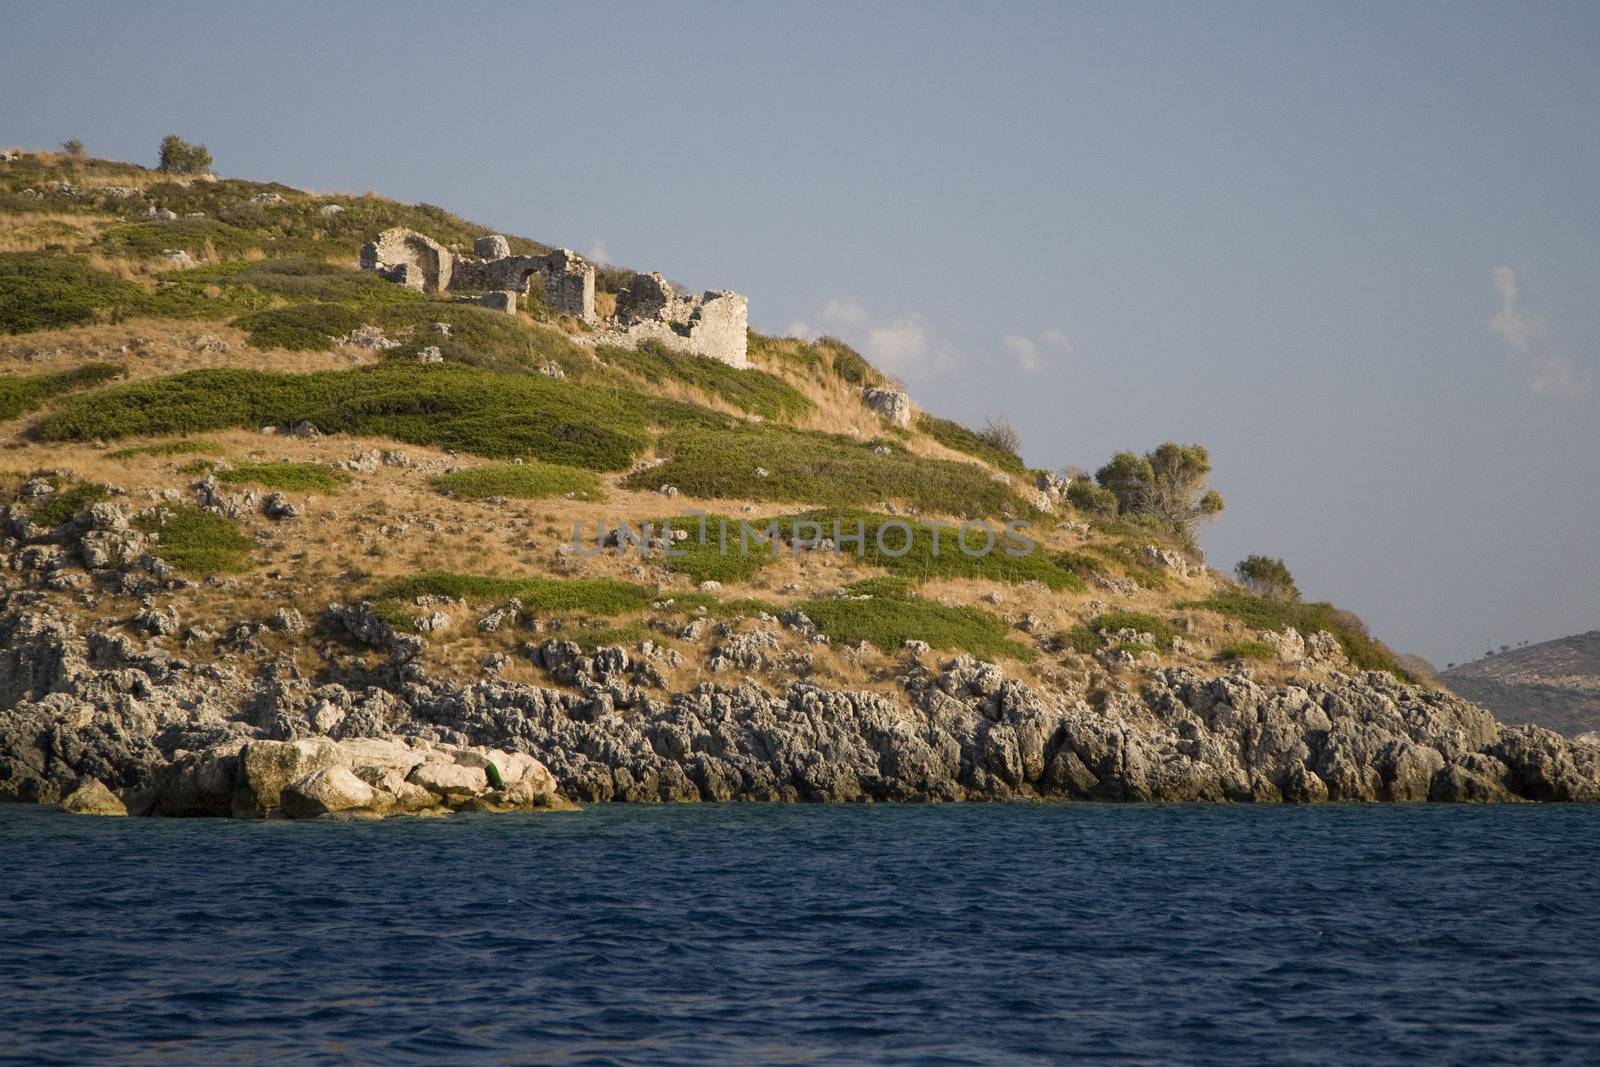 Zakynthos Island - summer holiday destination in Greece